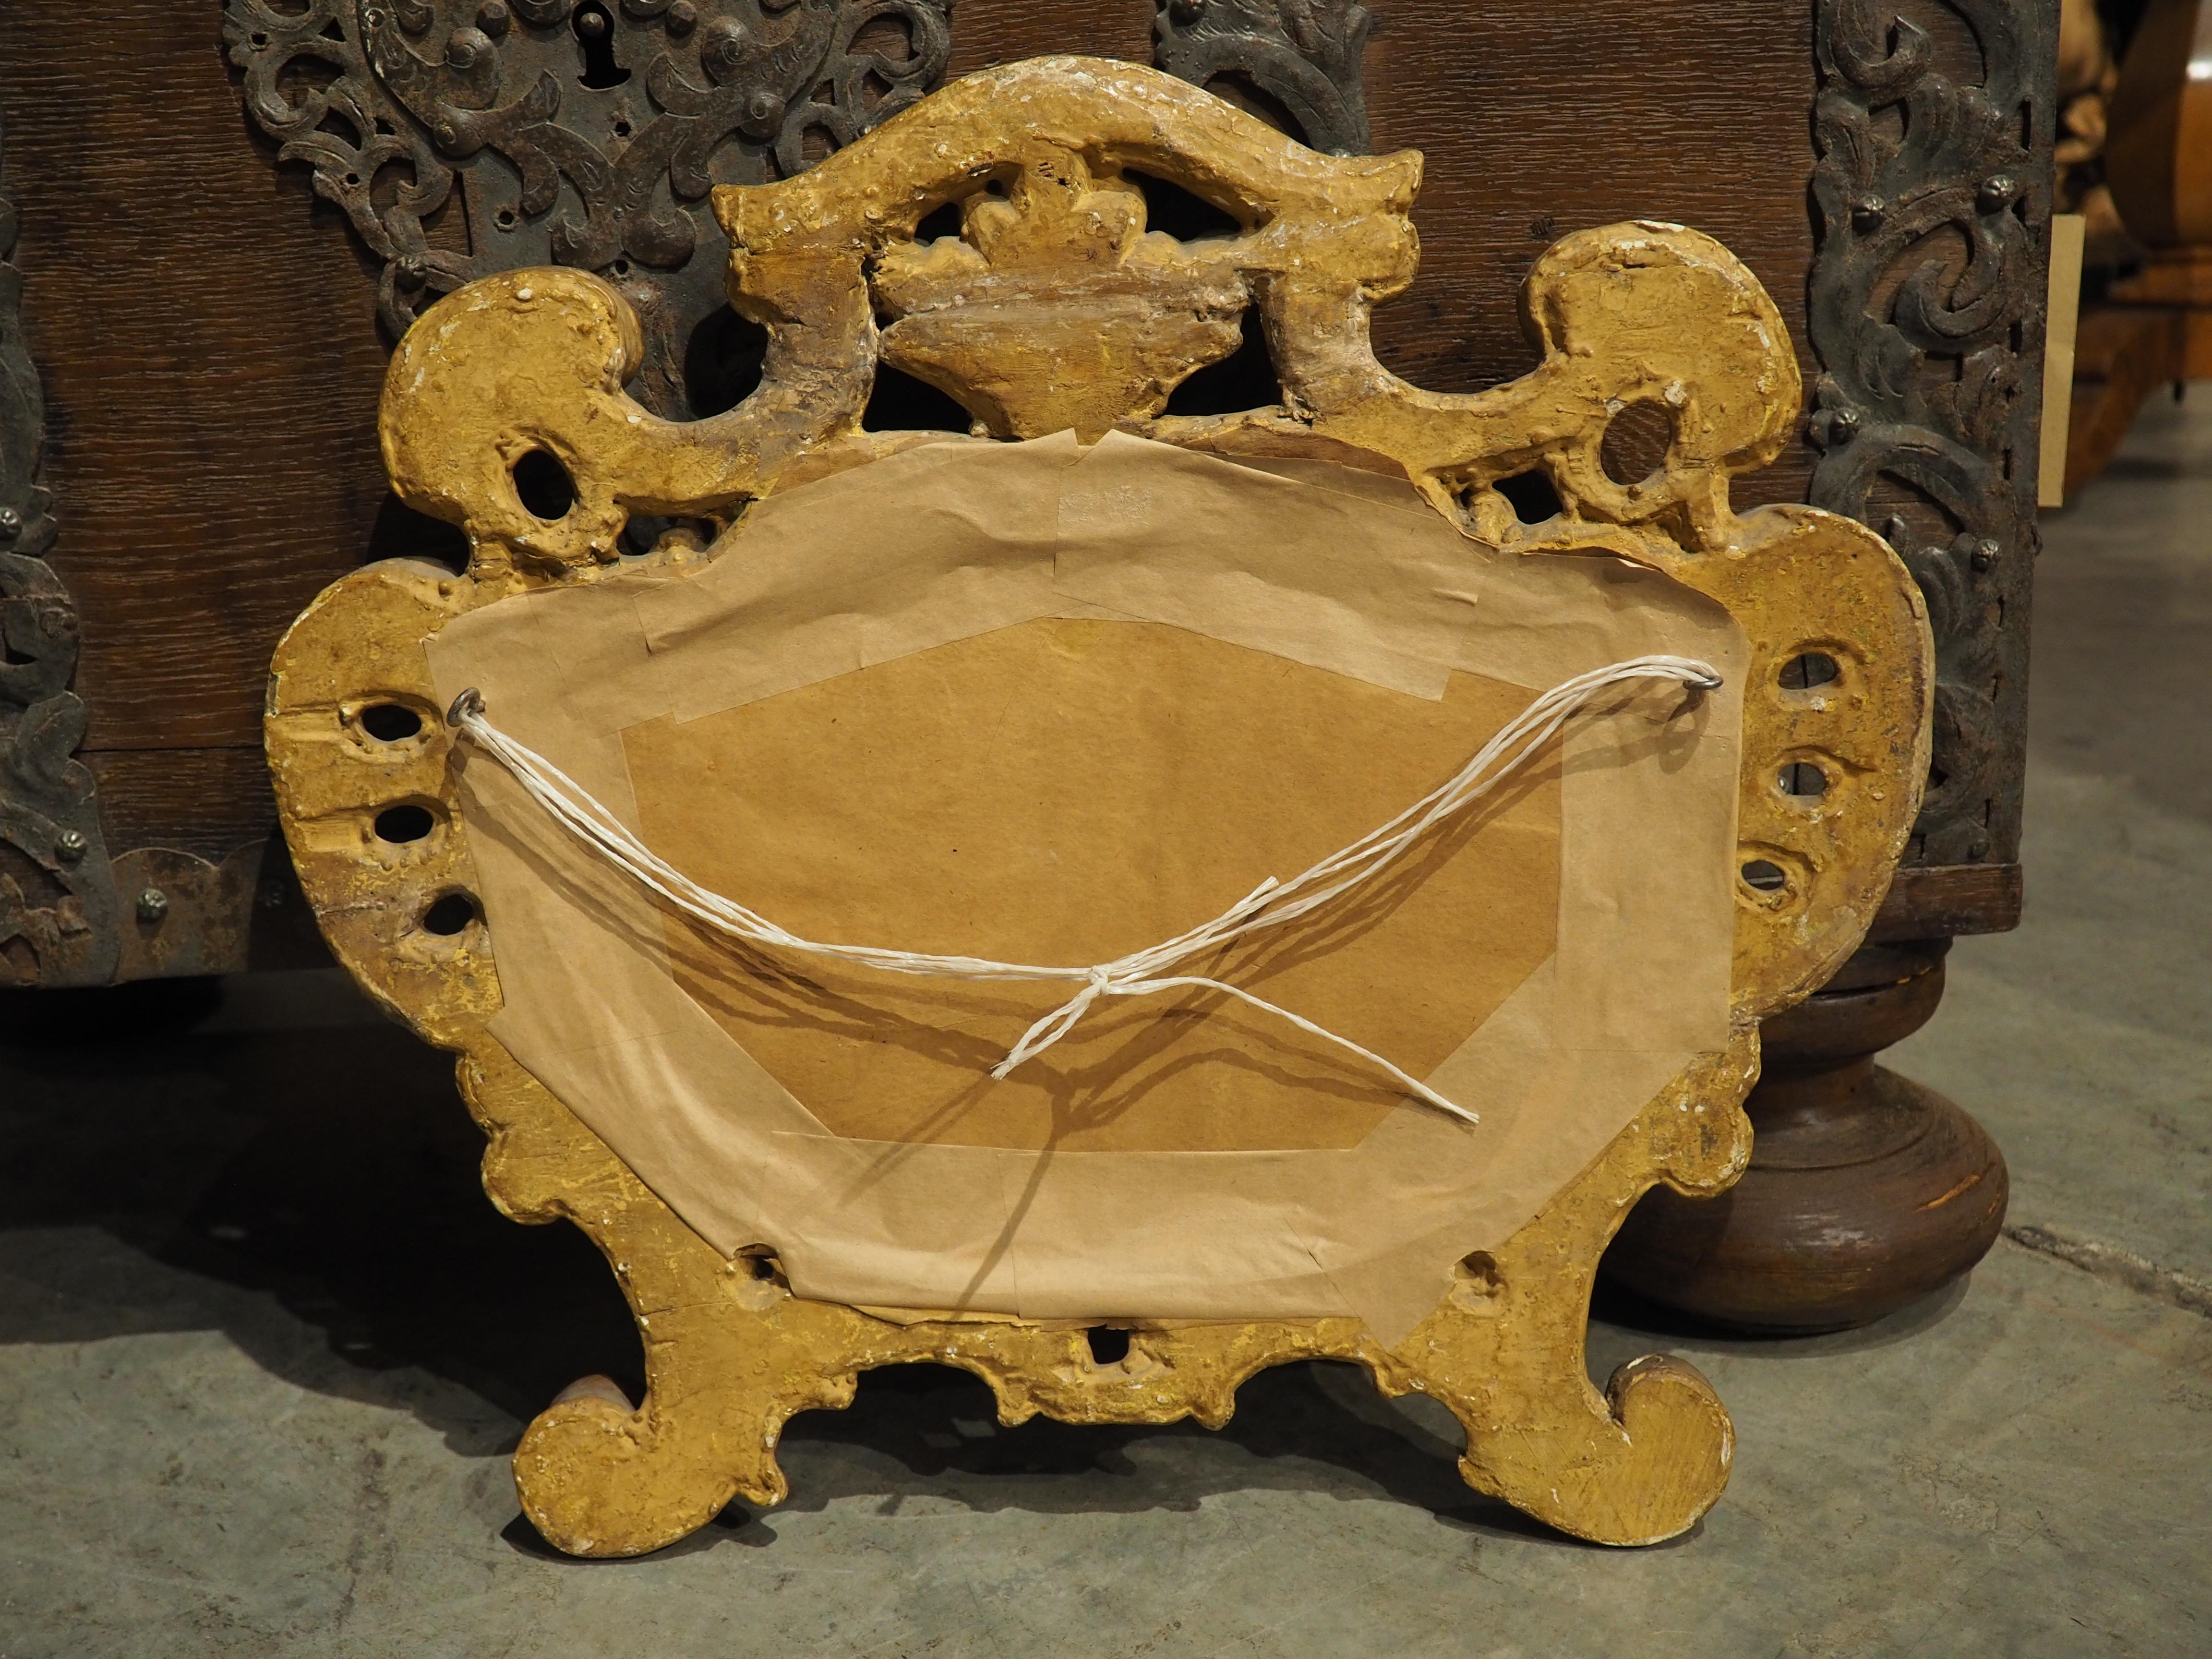 Dieser um 1750 in Italien handgeschnitzte barocke Kartuschen-Spiegel aus vergoldetem Holz zeigt ein geformtes Stück Glas, das von einer schönen goldenen Kartusche mit durchbrochenen Elementen umgeben ist. Die Schnitzereien sind von der Natur